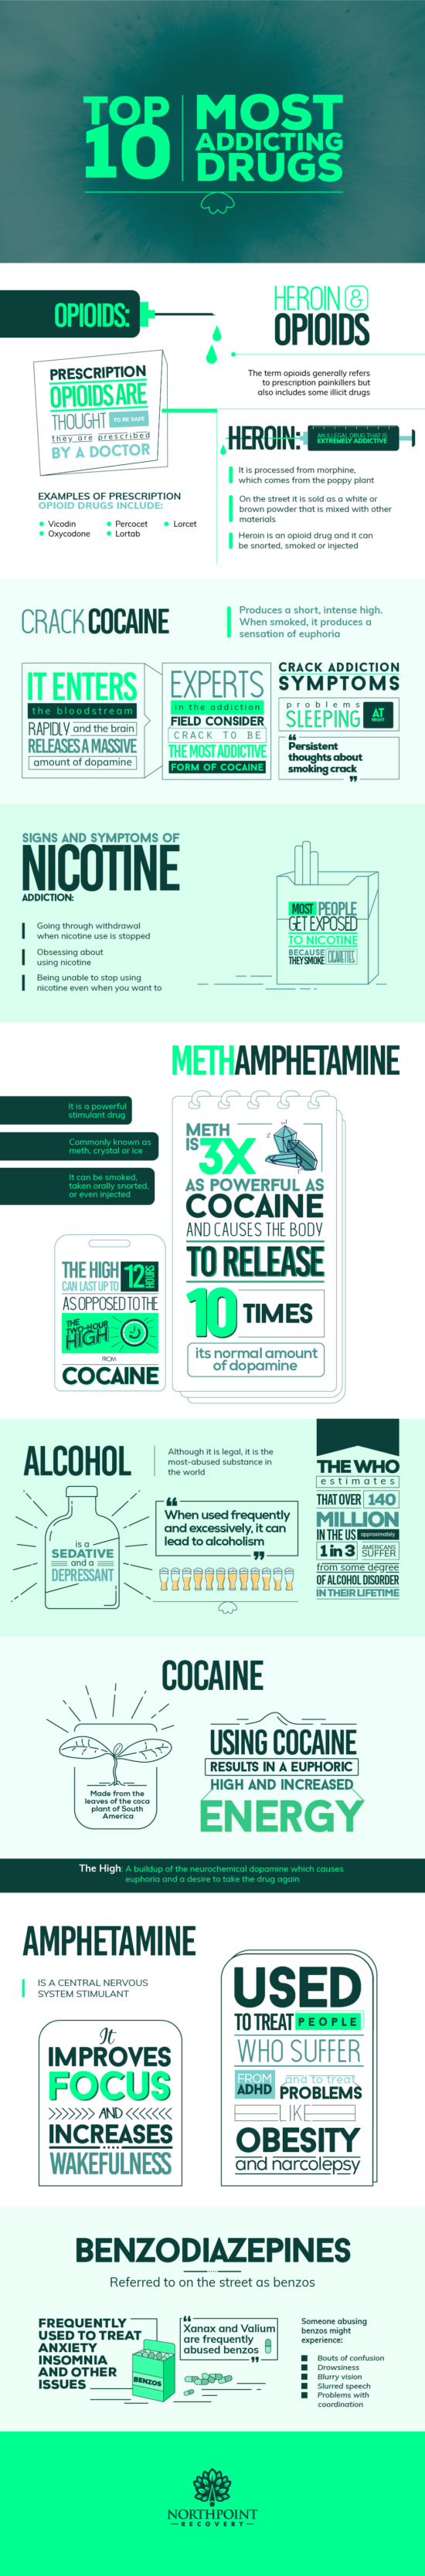 Top 10 nejvíce návykových drog.